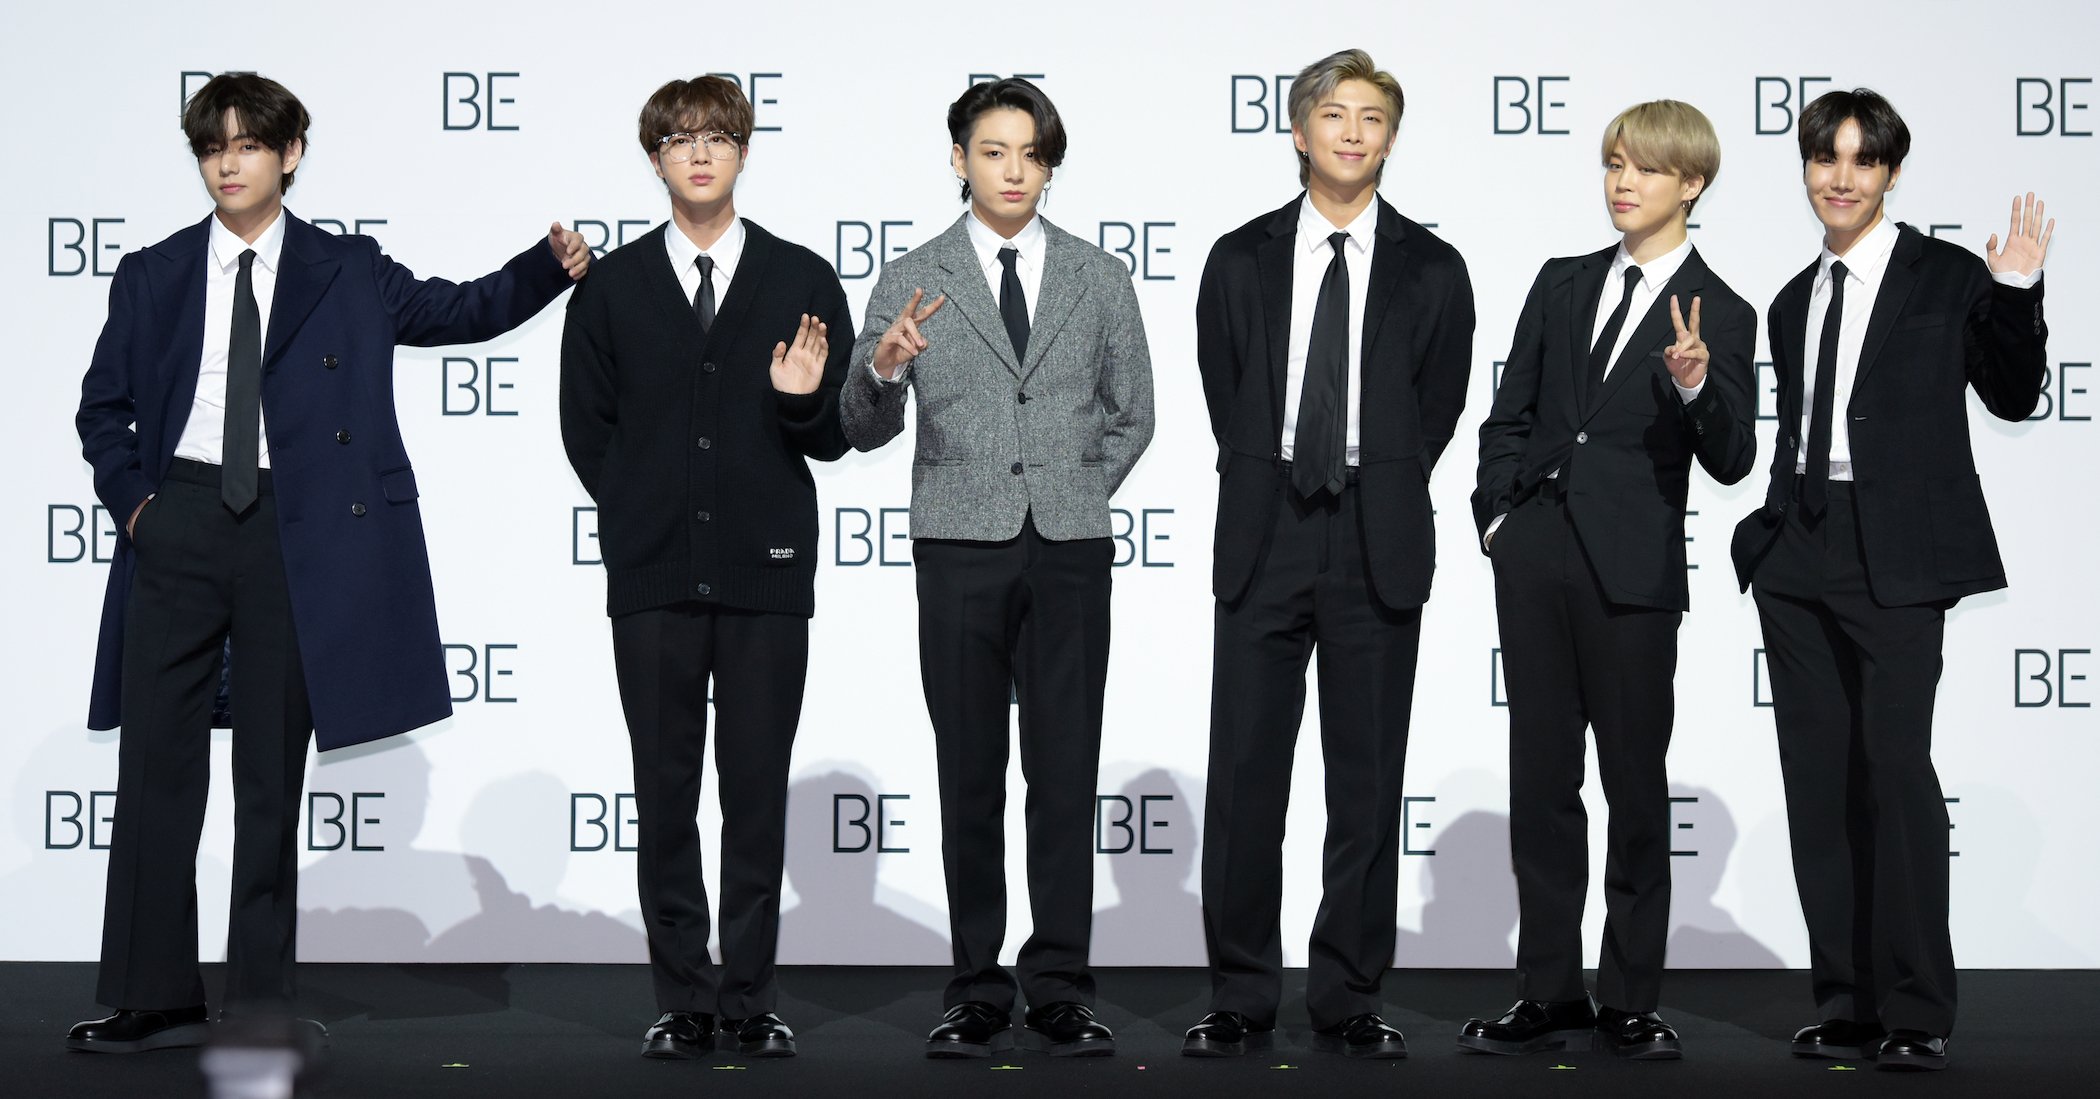 BTS members posing in a row